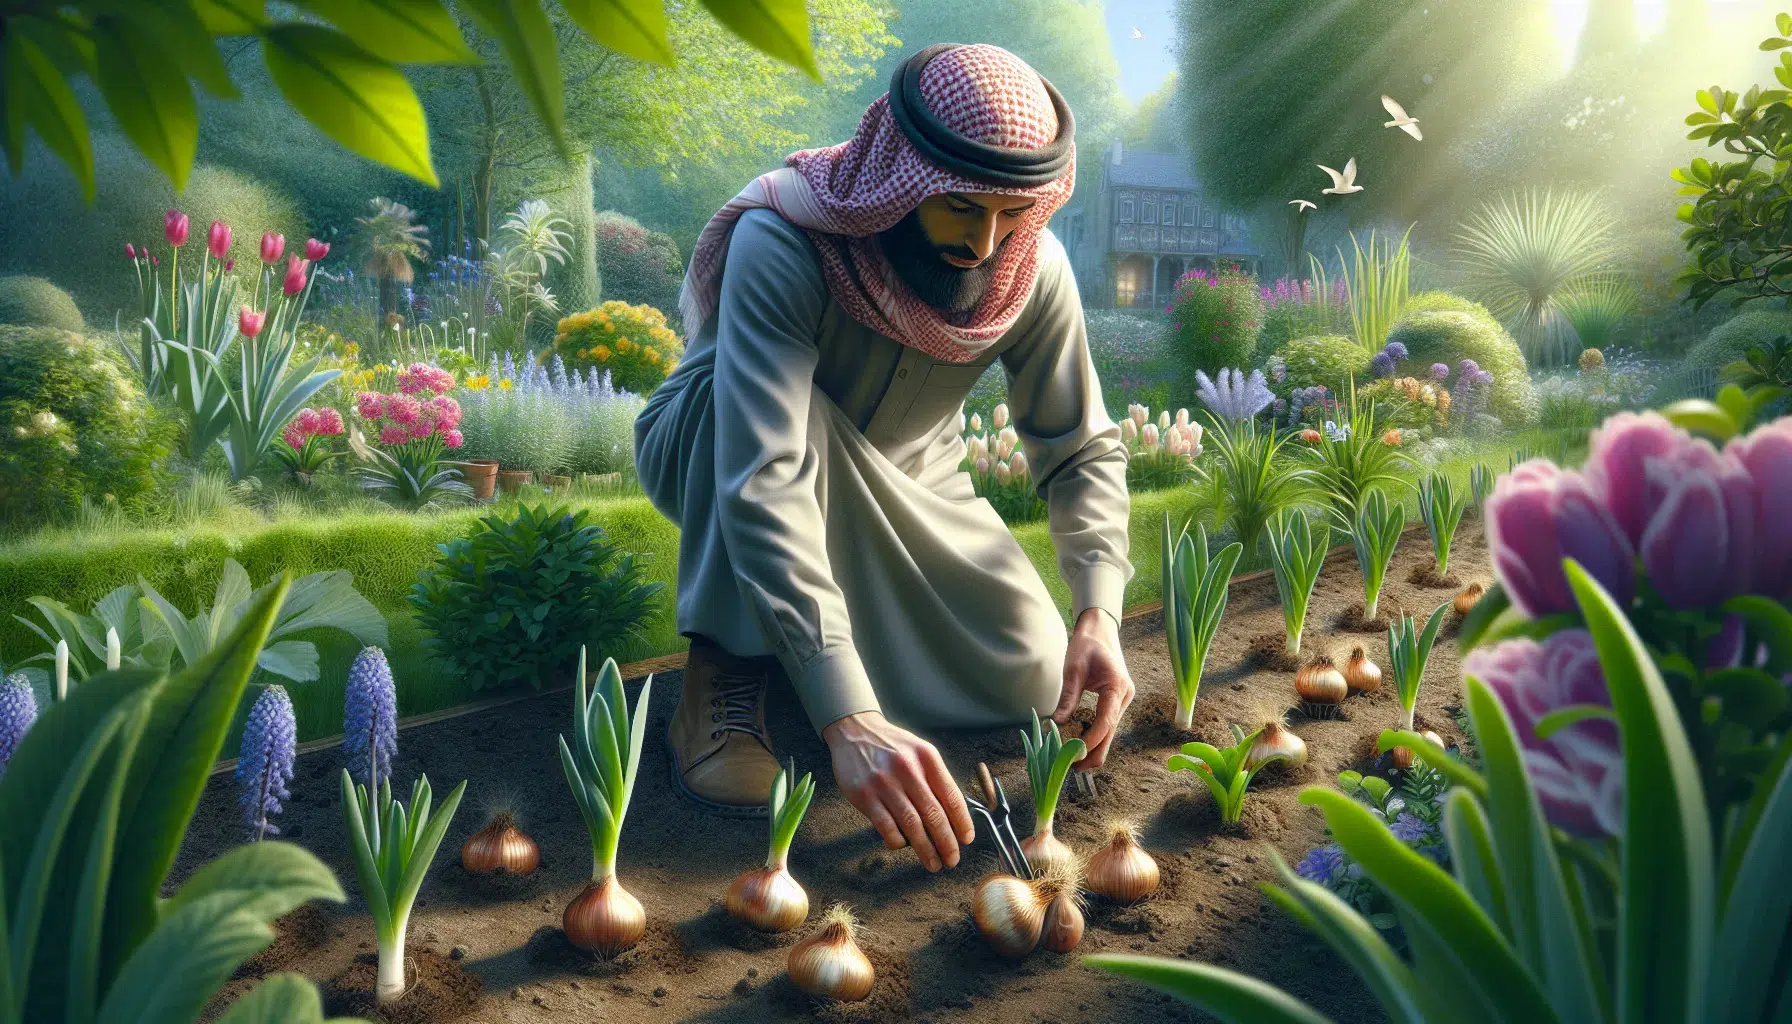 Imagen de un jardín con una persona plantando bulbos de verano siguiendo los pasos adecuados para su correcto cultivo.